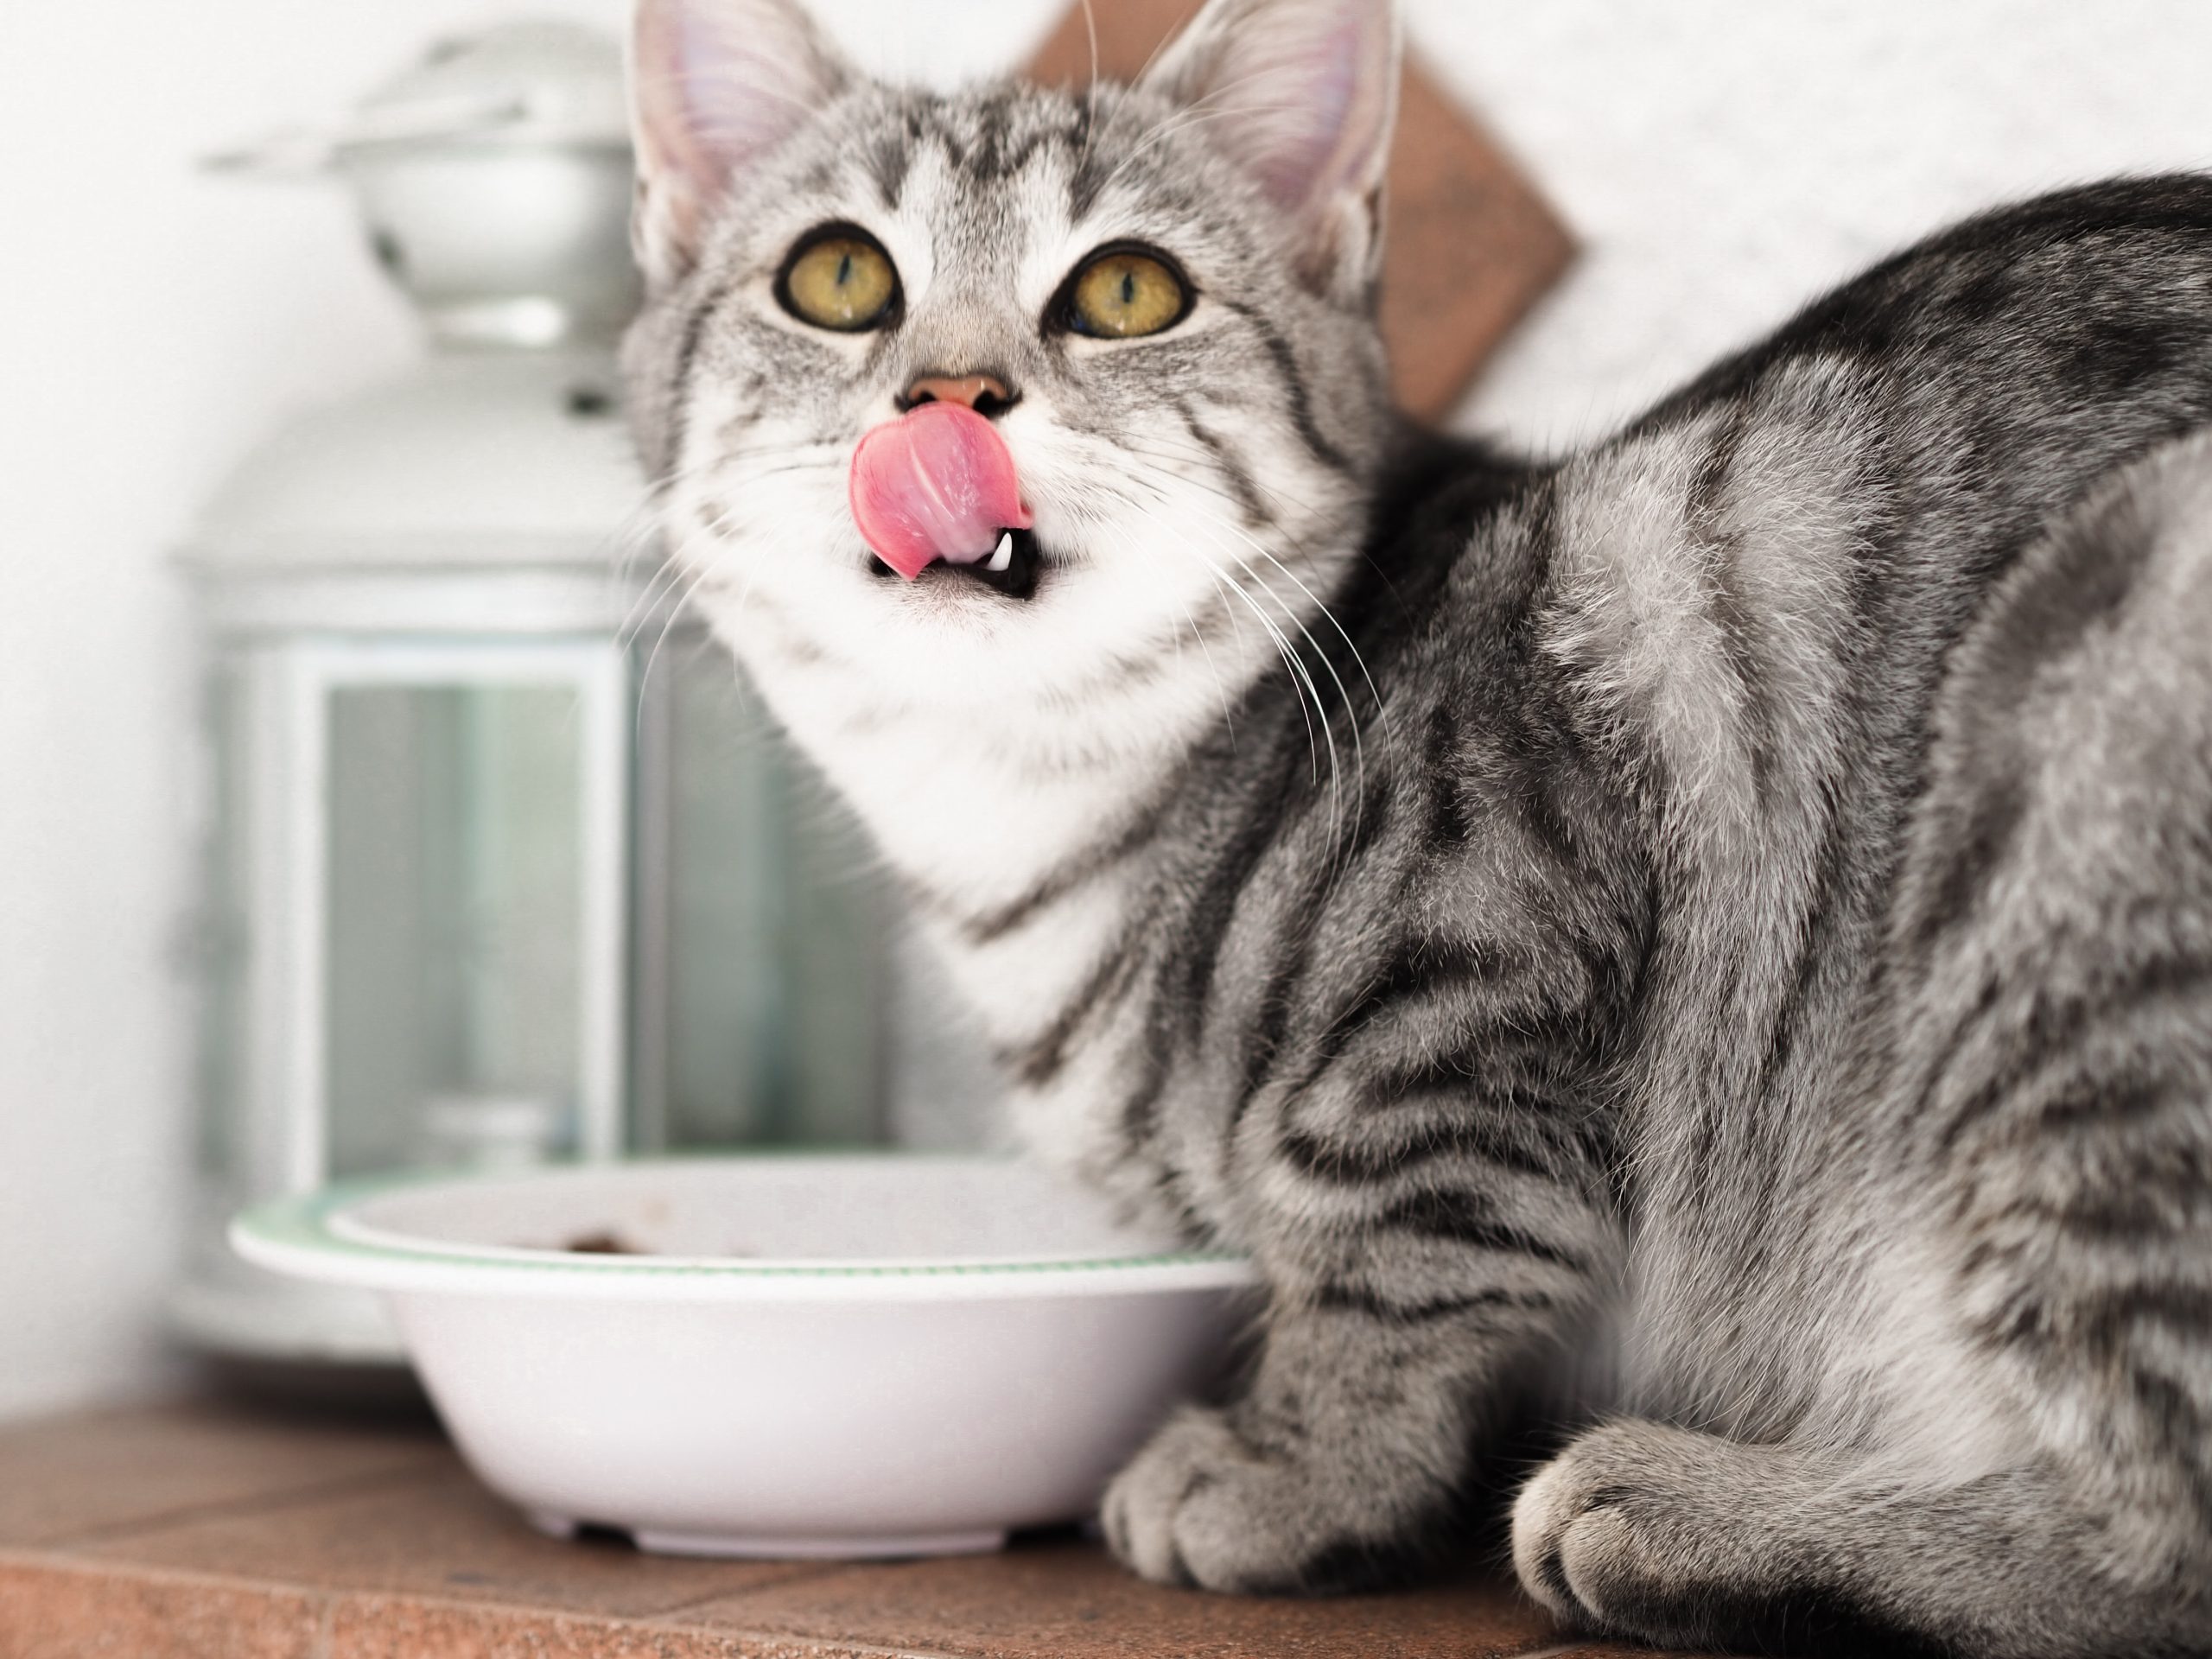 Ernährungstipps für ältere Katzen,Ernährung Katze,Katzenfutter, Ernährungstipps für ältere Katzen: So hältst du deinen Stubentiger fit und gesund